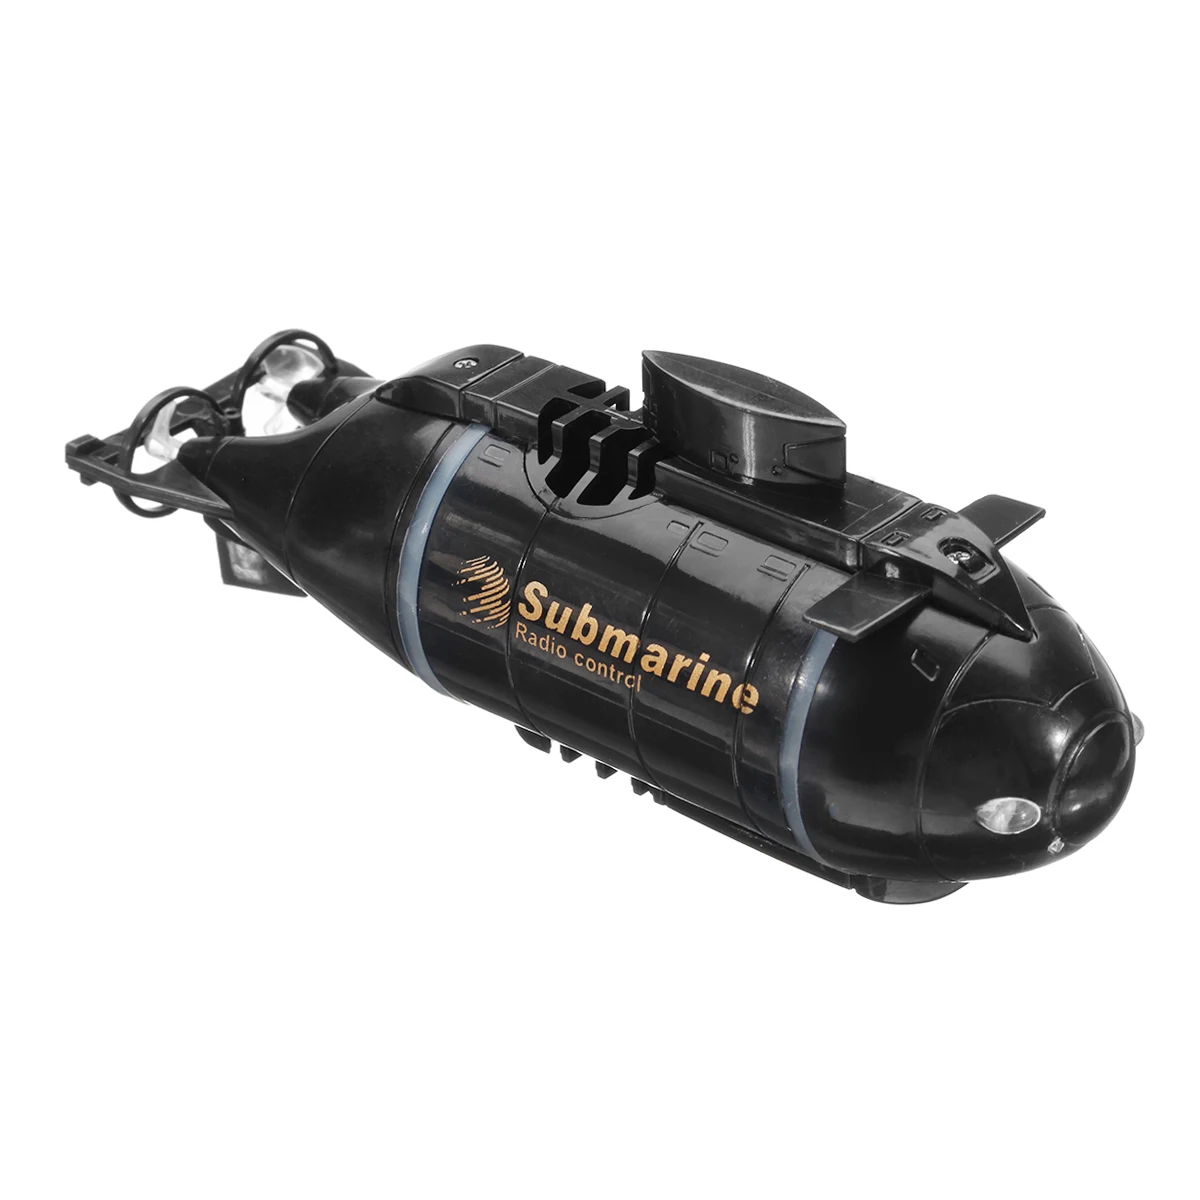 Мини RC Подводная лодка Скорость лодка дистанционное управление Дрон Pigboat моделирование модель подарок Игрушка Дети с 40 МГц передатчик 6 каналов